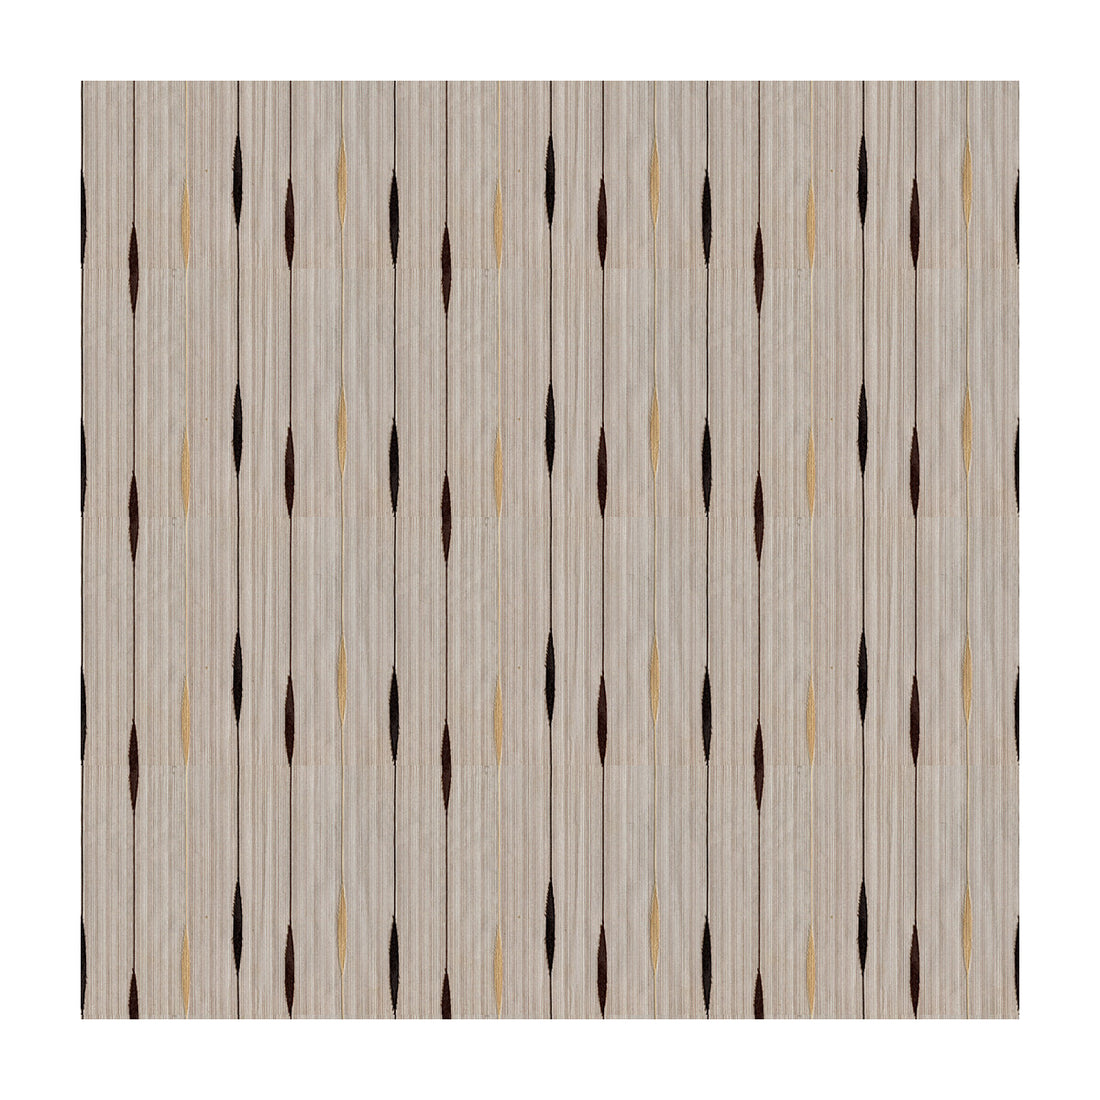 Kravet Basics fabric in 4117-616 color - pattern 4117.616.0 - by Kravet Basics